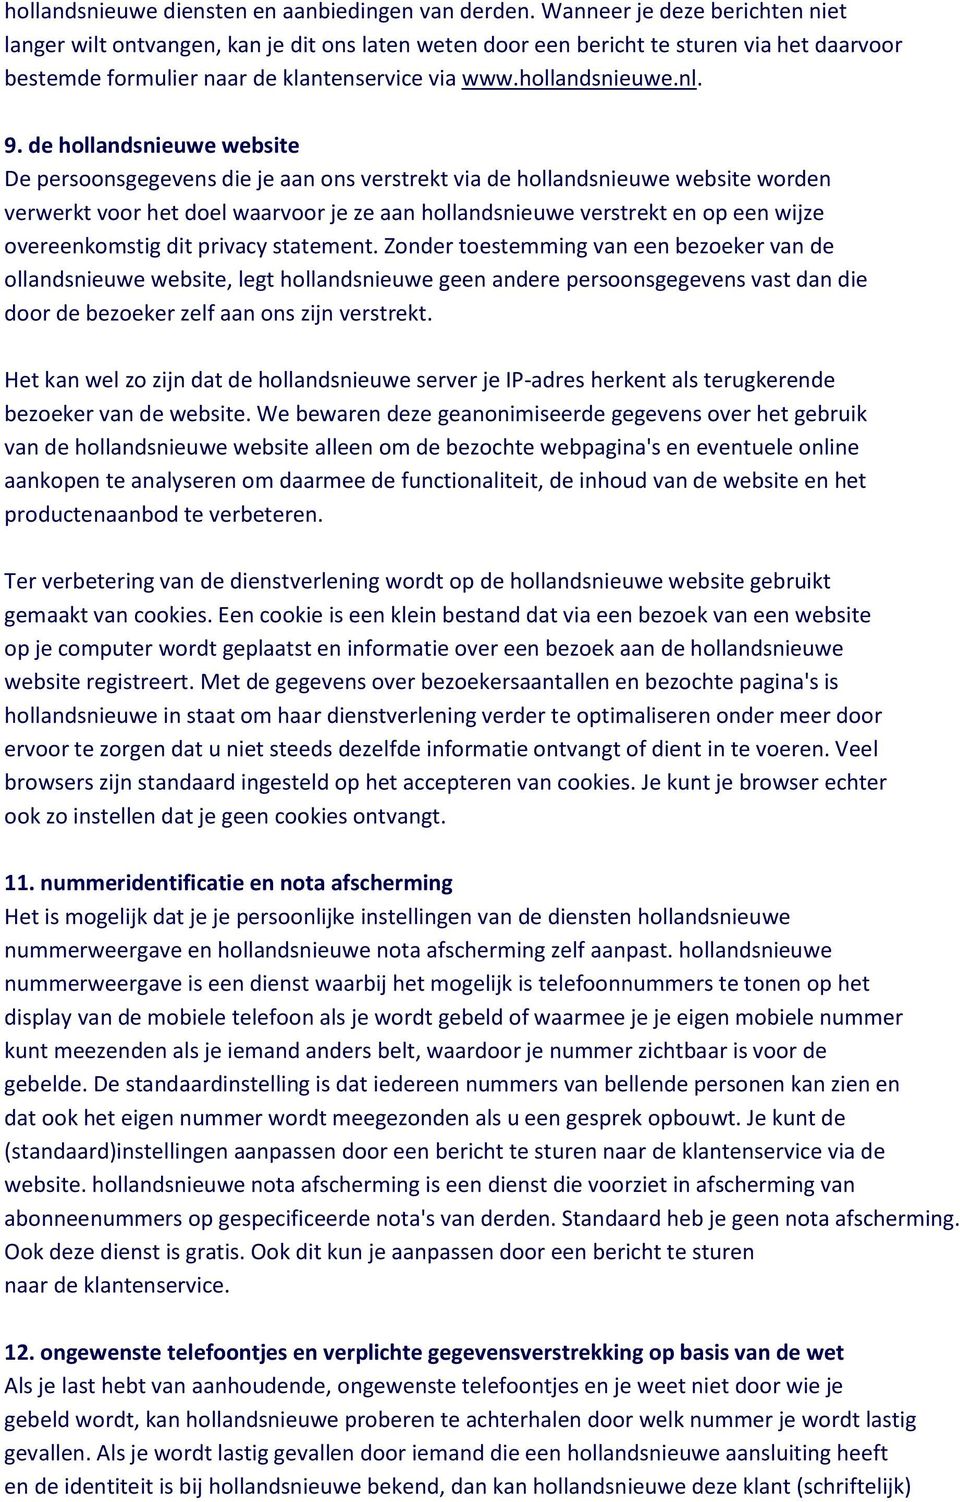 de hollandsnieuwe website De persoonsgegevens die je aan ons verstrekt via de hollandsnieuwe website worden verwerkt voor het doel waarvoor je ze aan hollandsnieuwe verstrekt en op een wijze